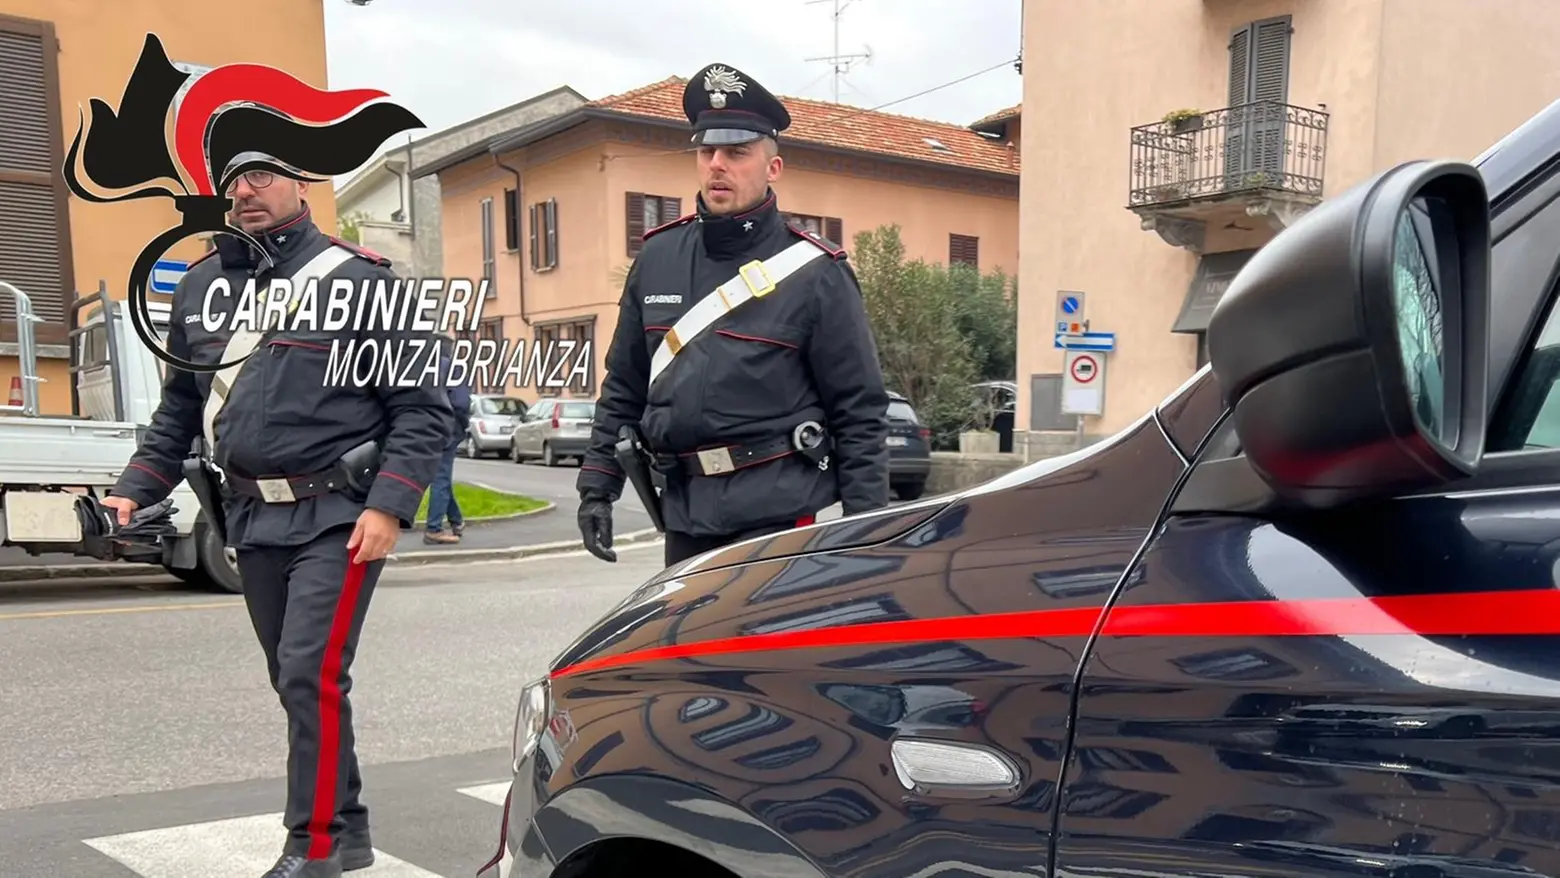 L'auto è stata bloccata dai carabinieri (Archivio)